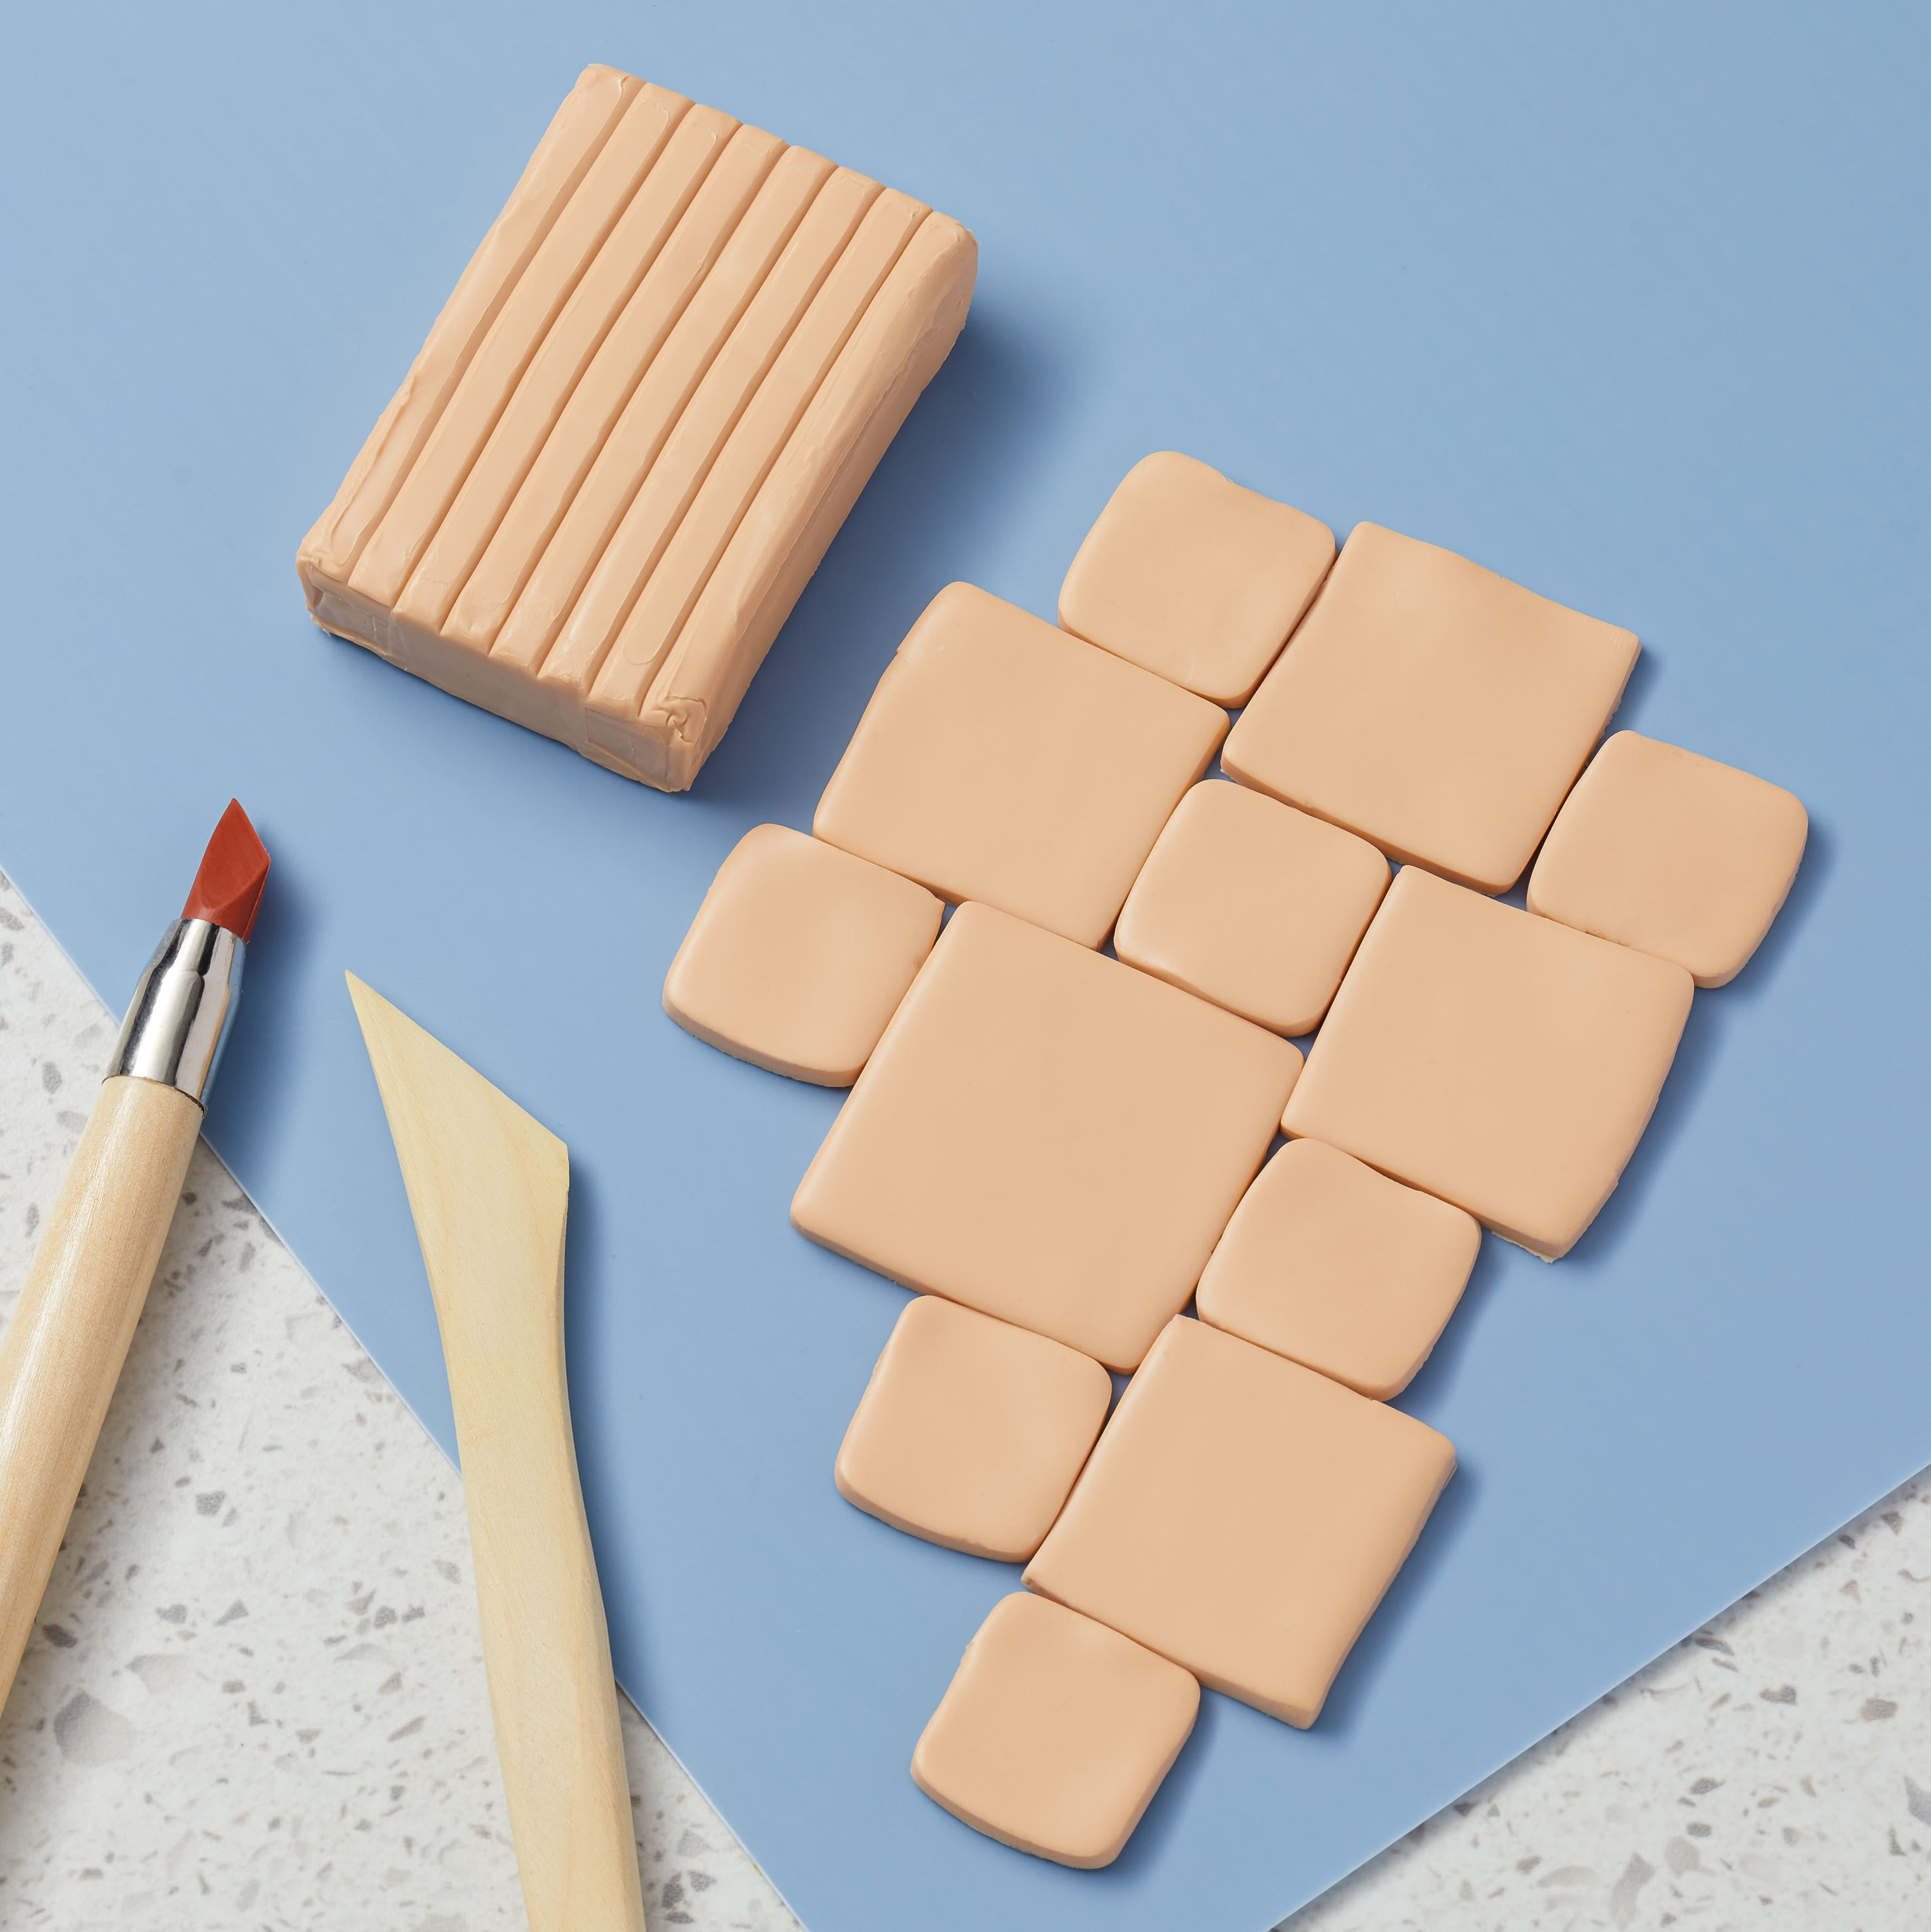 34 Polymer Clay Ideas · Craftwhack